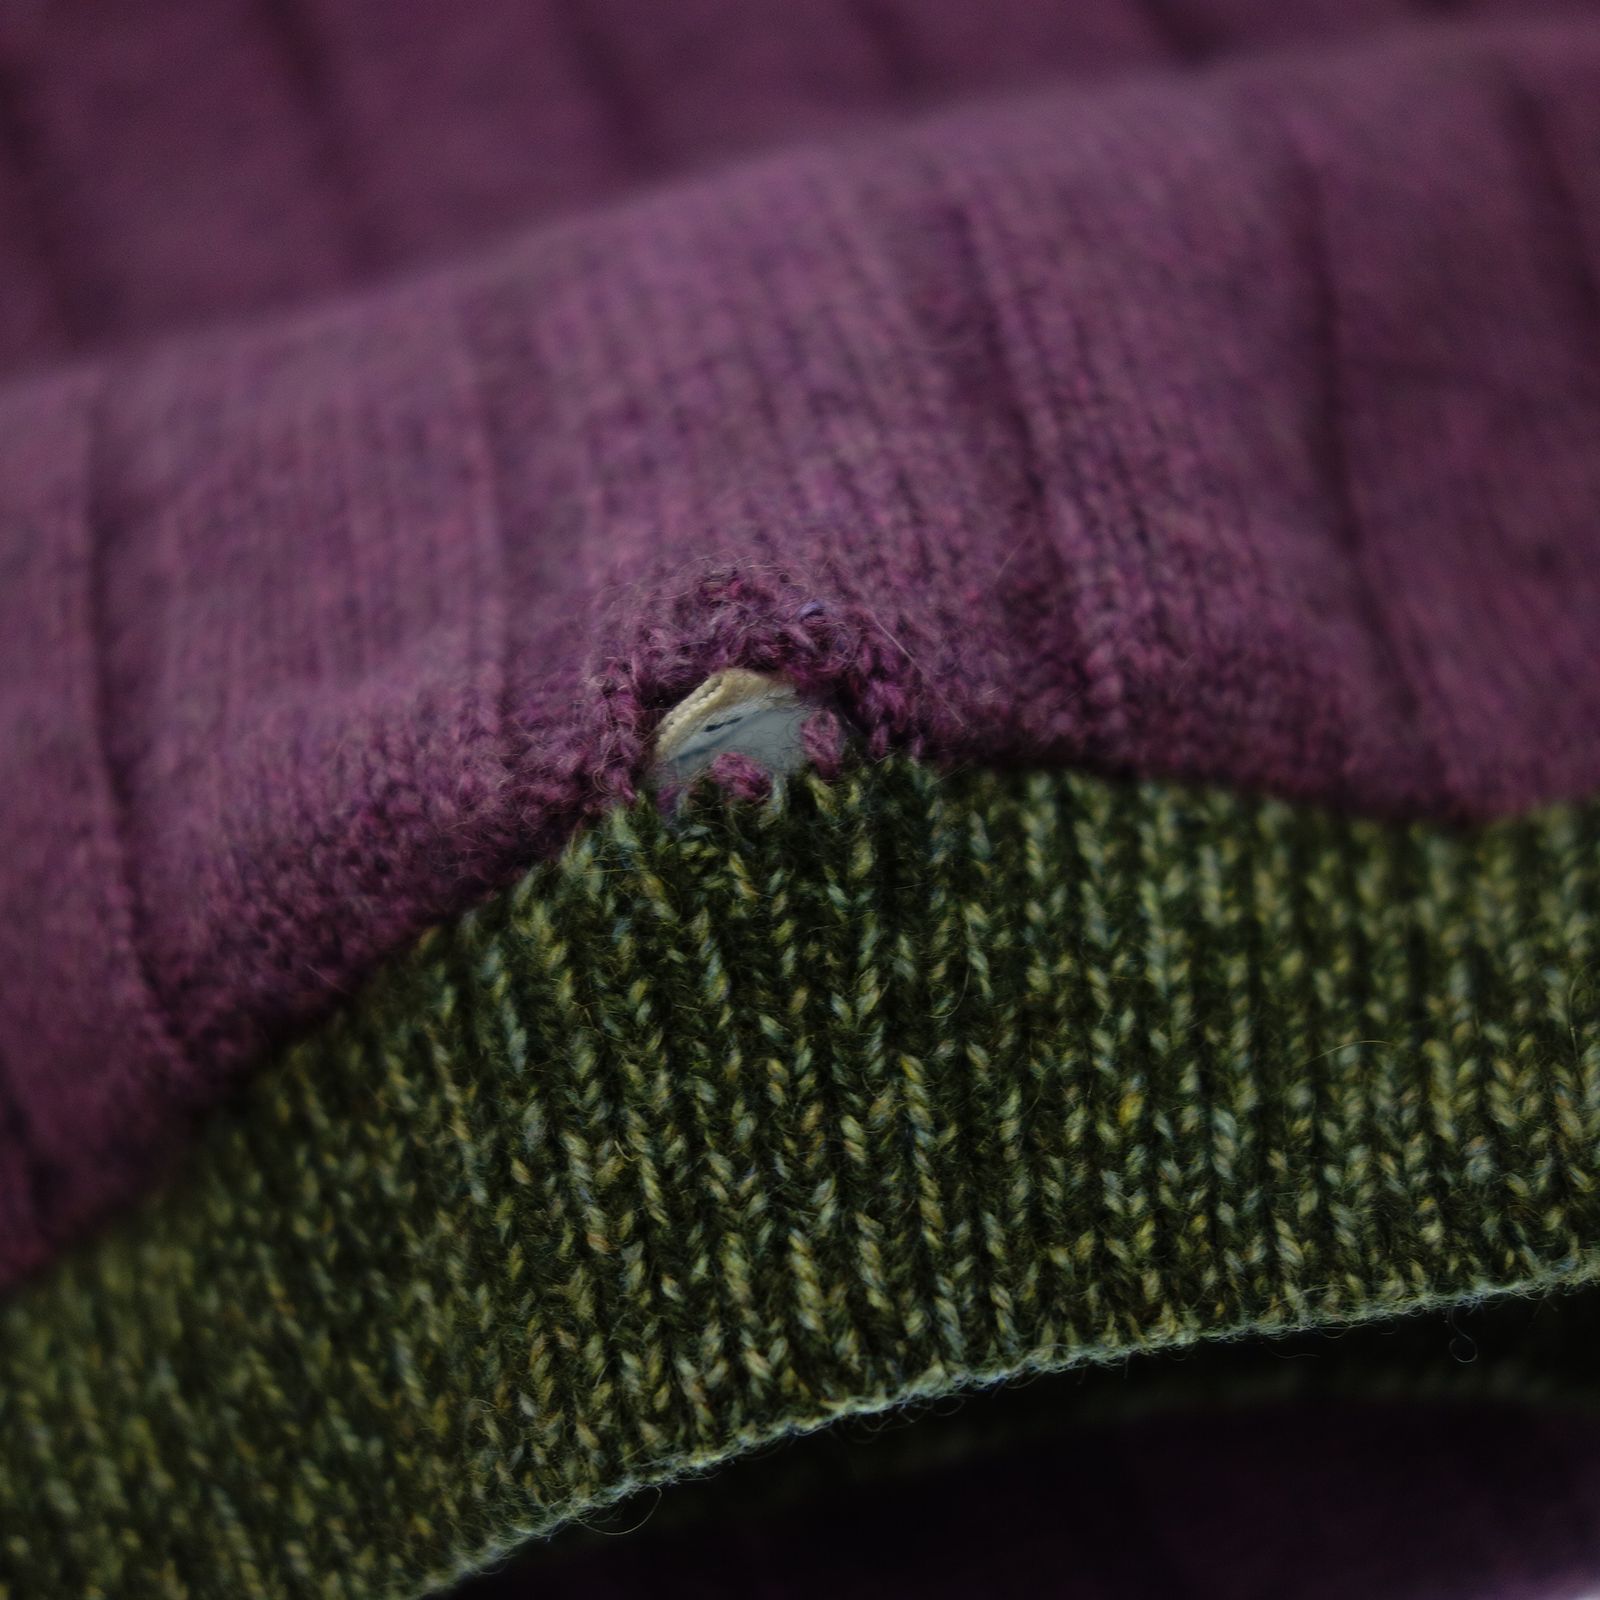 カシミヤ100%✨シャネル　ニット　セーター　ココマーク　パープル　38サイズ袖丈61